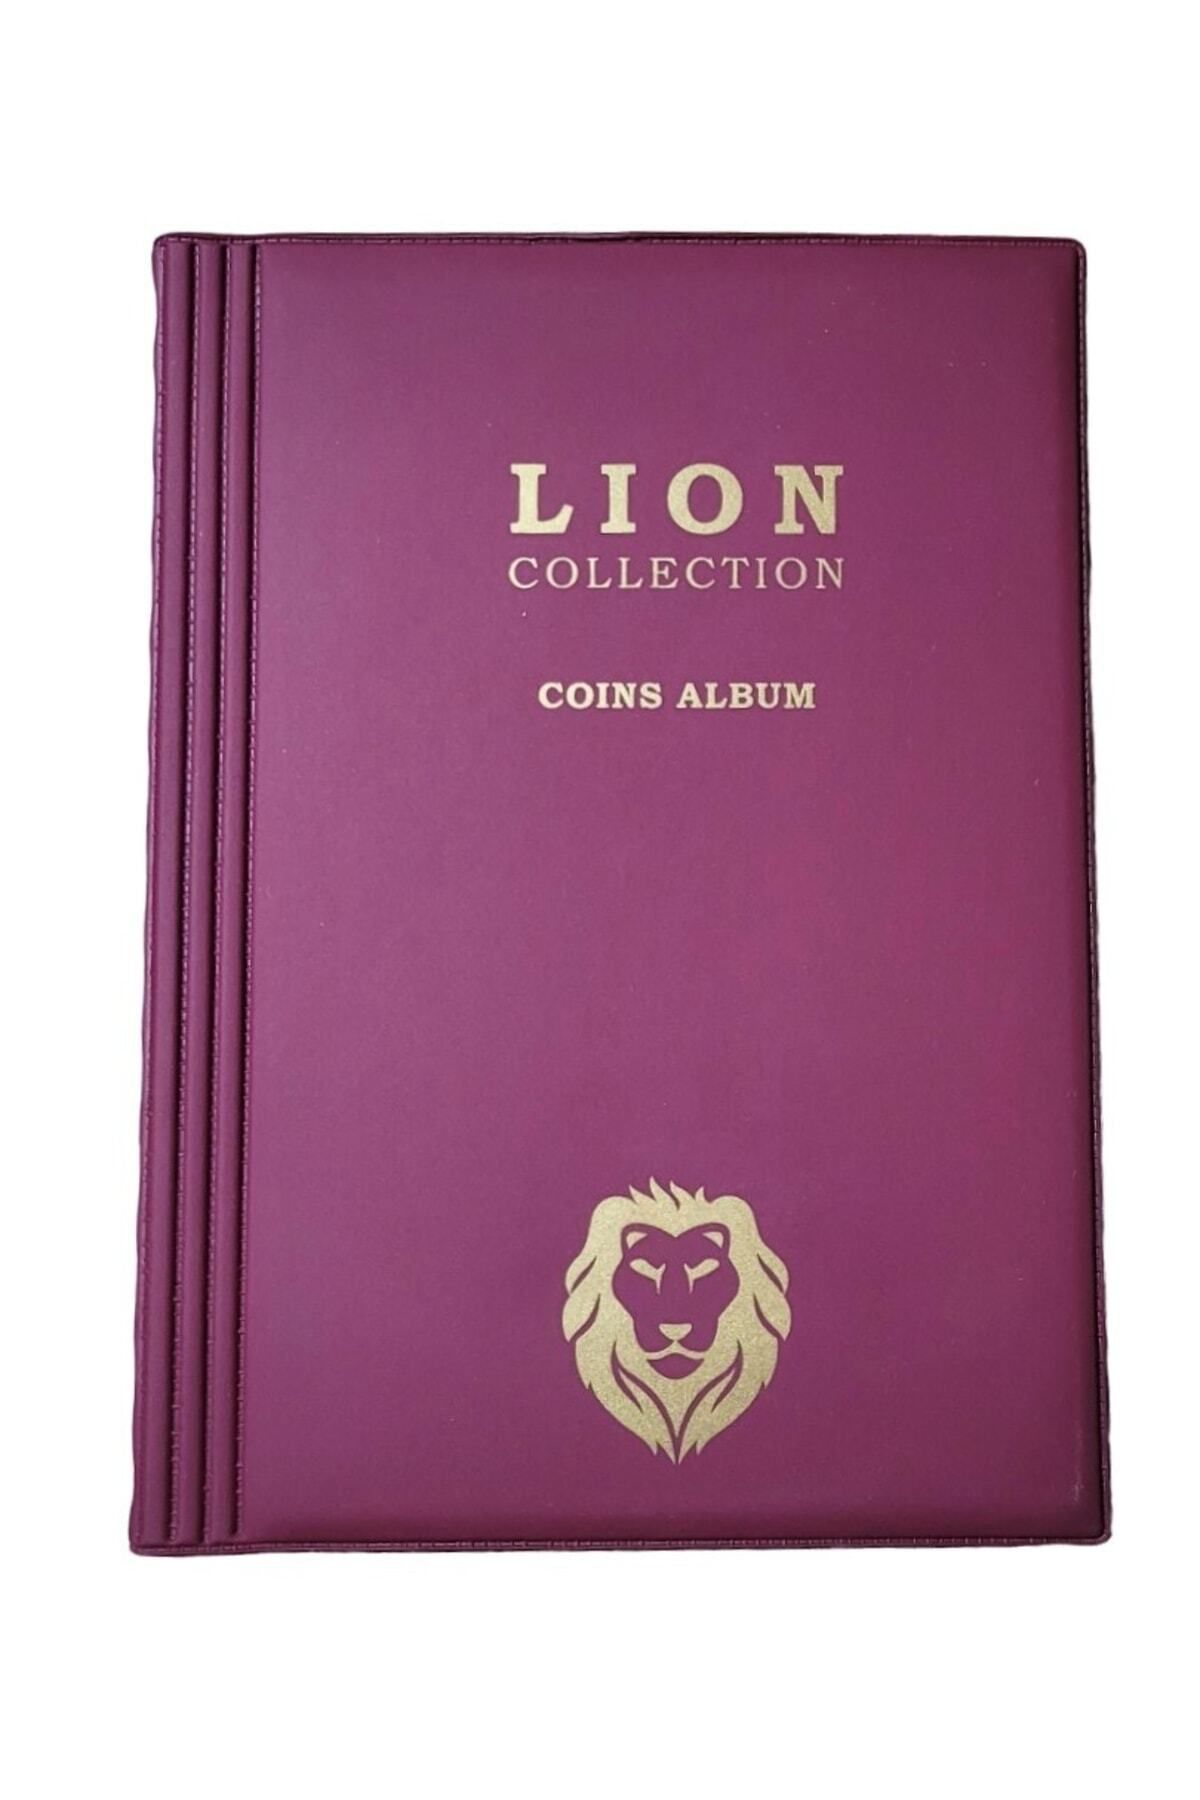 Lion 72 Gözlü, 12 Sayfalı, Kapamalı Paralar Için Madeni Para Albümü- Bordo Renk Koleksiyon